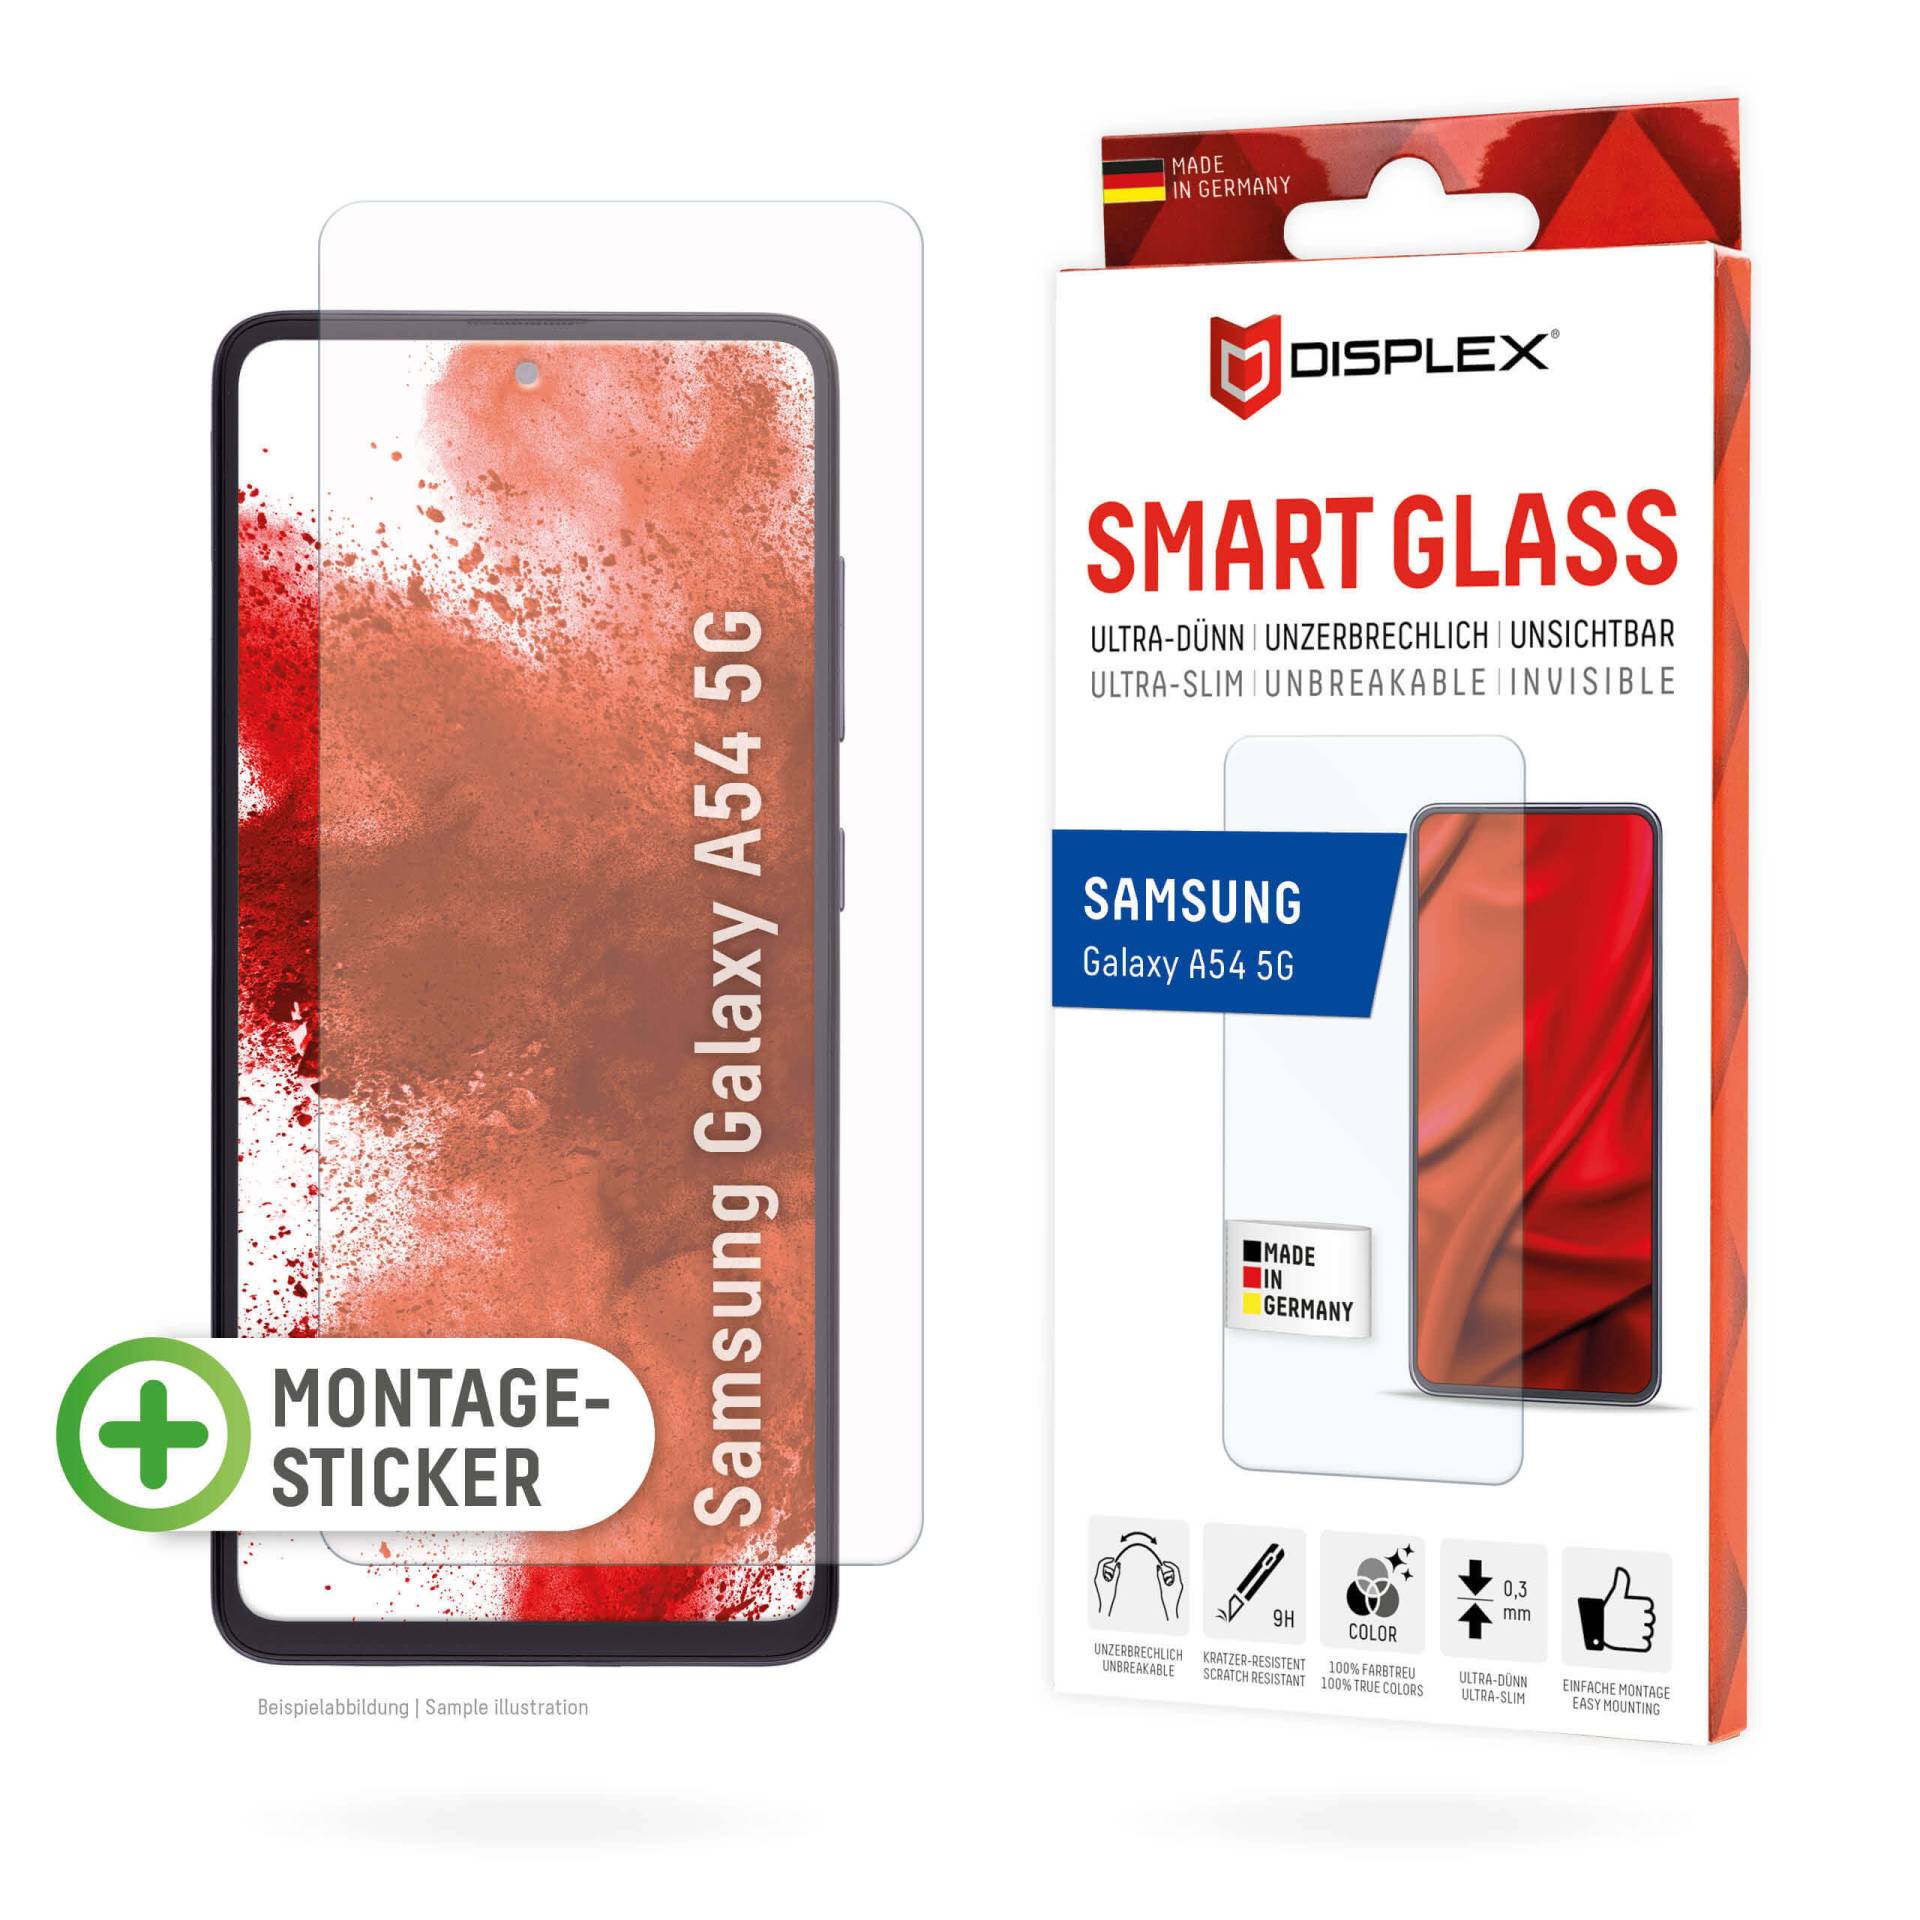 DISPLEX Smart Glass (9H) für Samsung Galaxy A54 5G Montagesticker, unzerbrechlich, ultra-dünn, unsichtbar von Displex